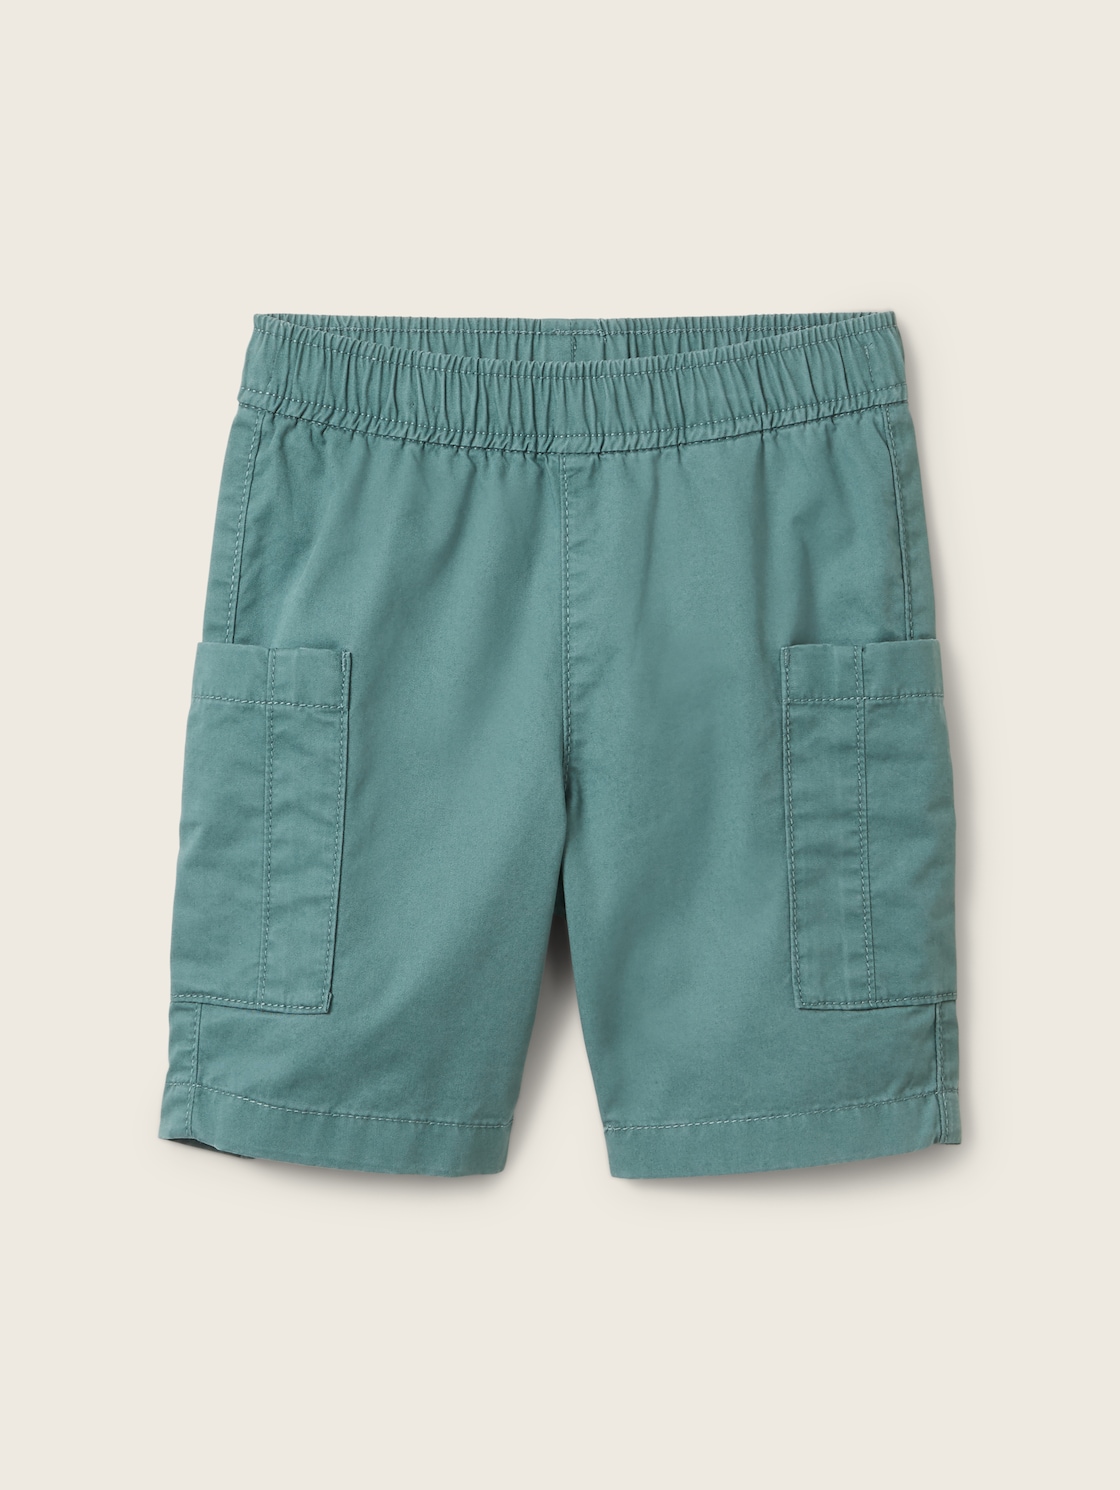 TOM TAILOR Jungen Cargo Shorts, grün, Uni, Gr. 128 von Tom Tailor